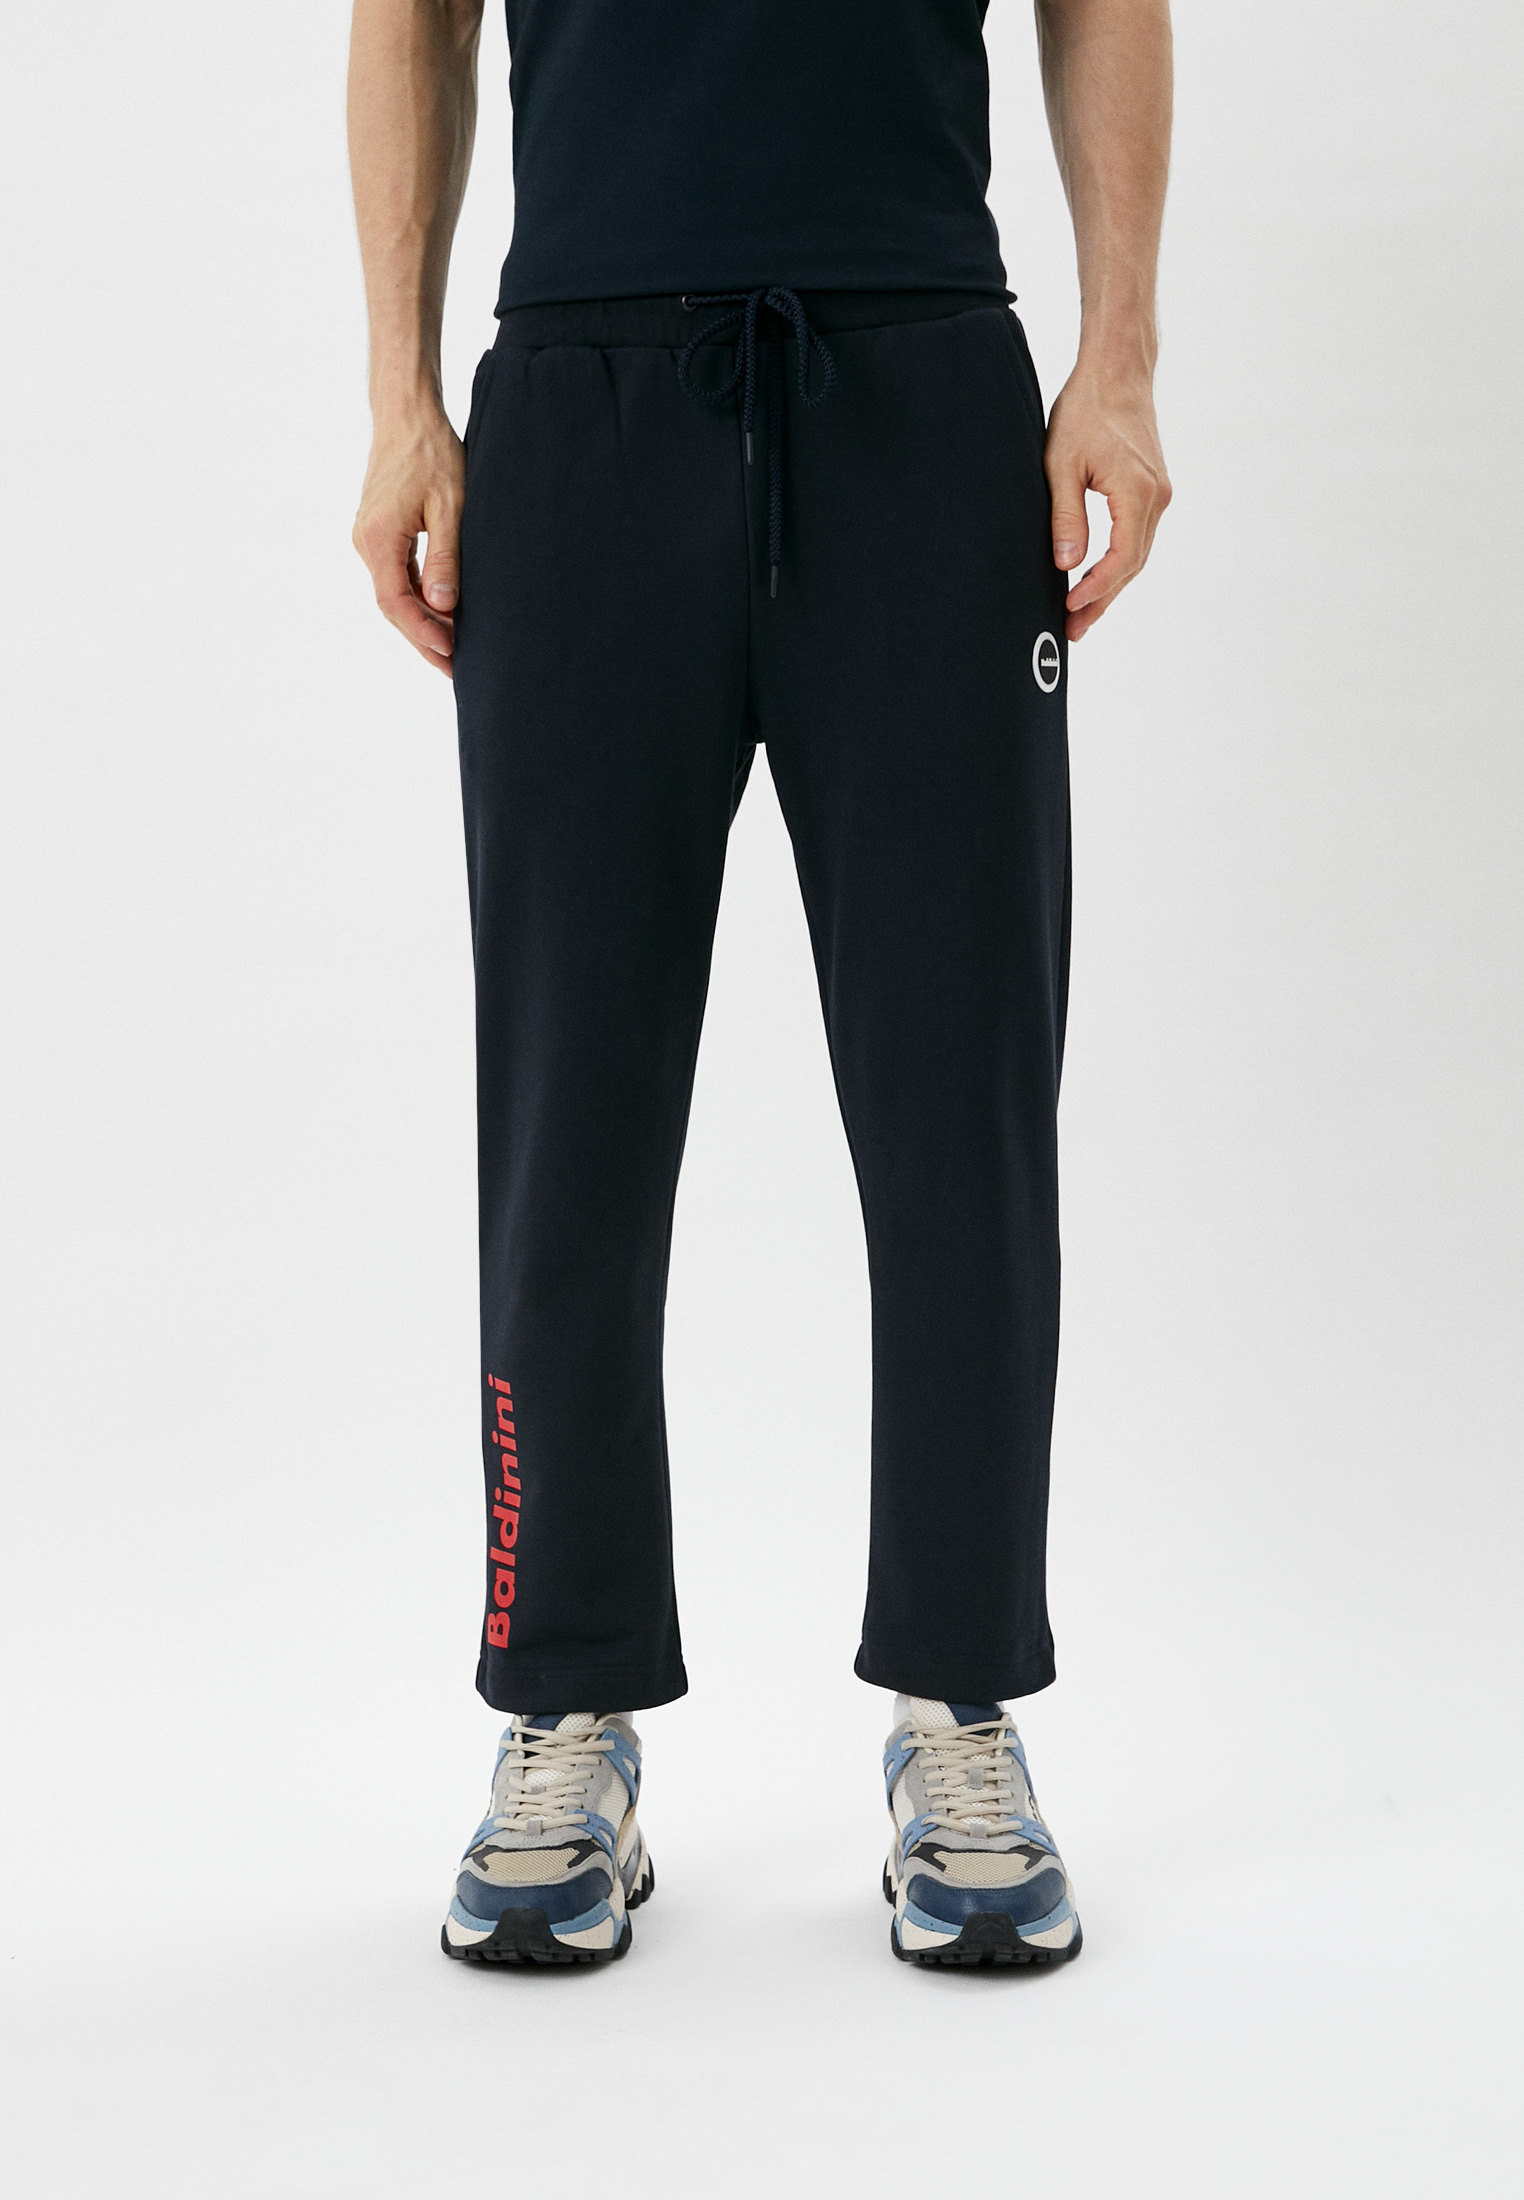 Мужские спортивные брюки Baldinini (Балдинини) M106L: изображение 1